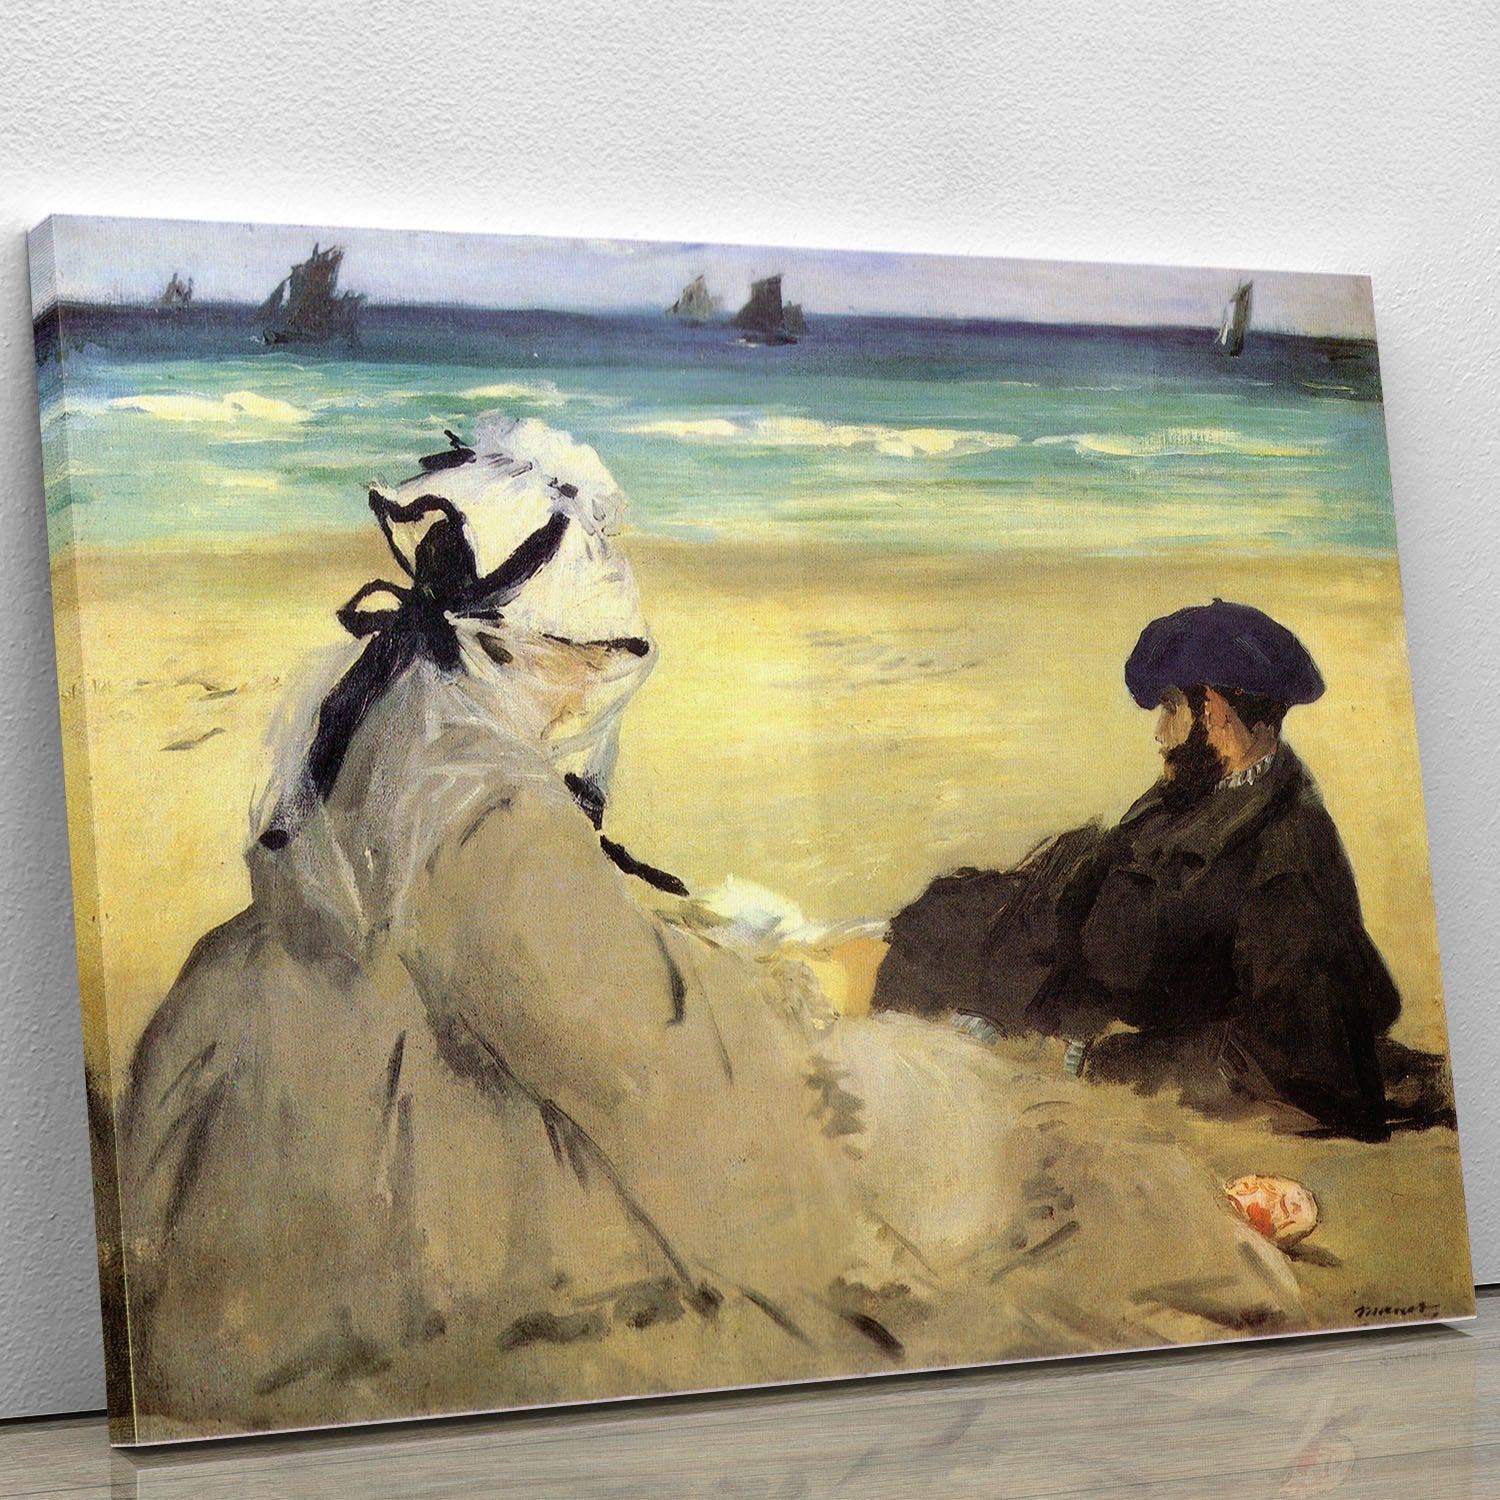 Sur la plage 1873 by Manet Canvas Print or Poster